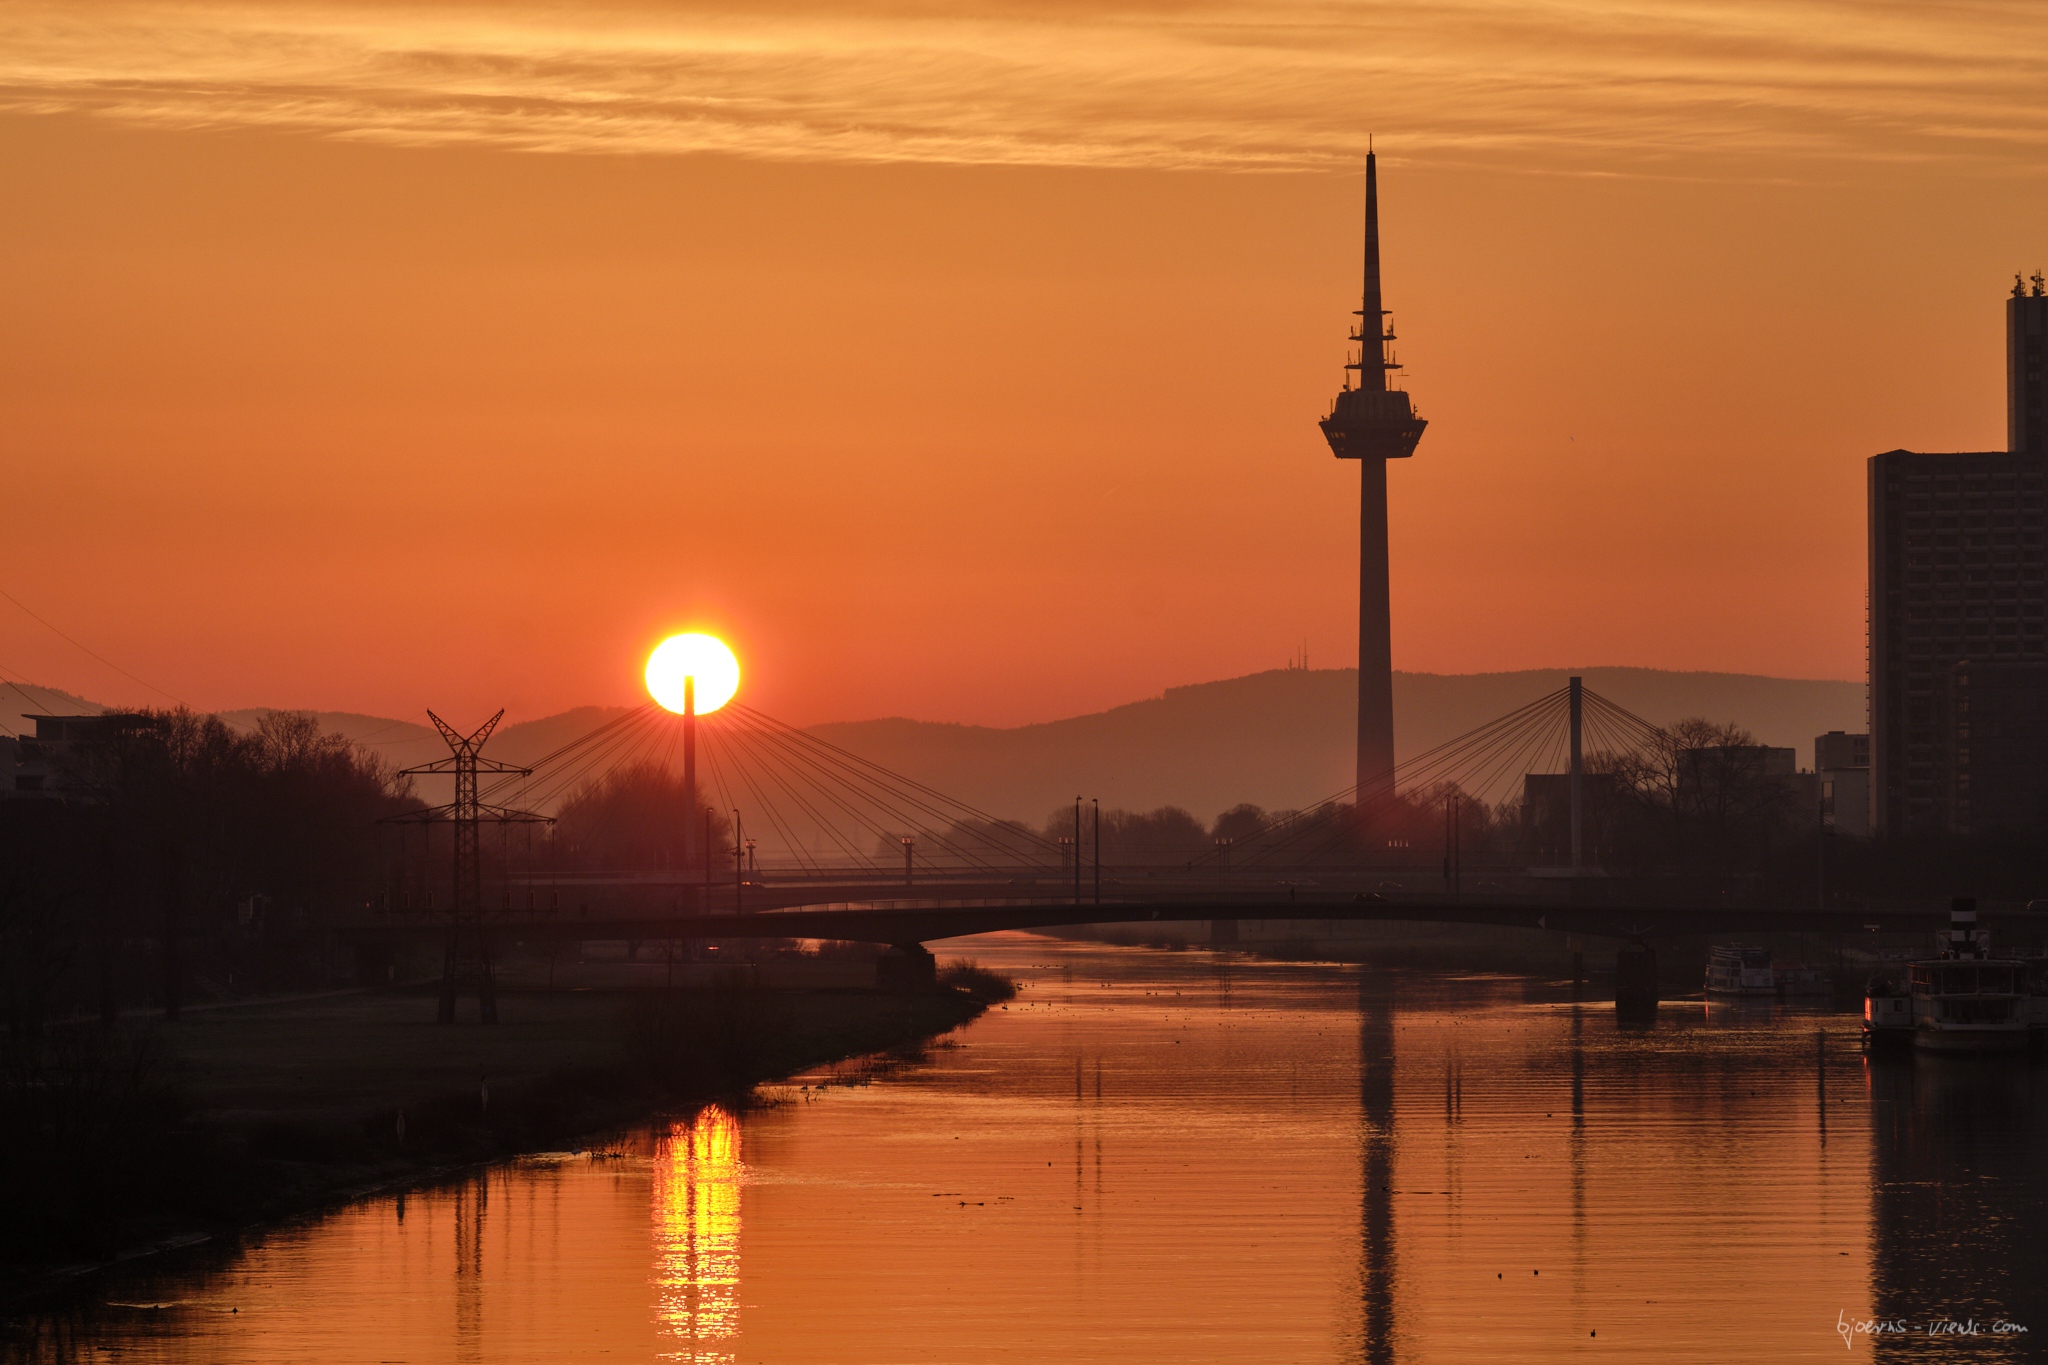 Wunders chöner Sonnenaufgang in Mannheim